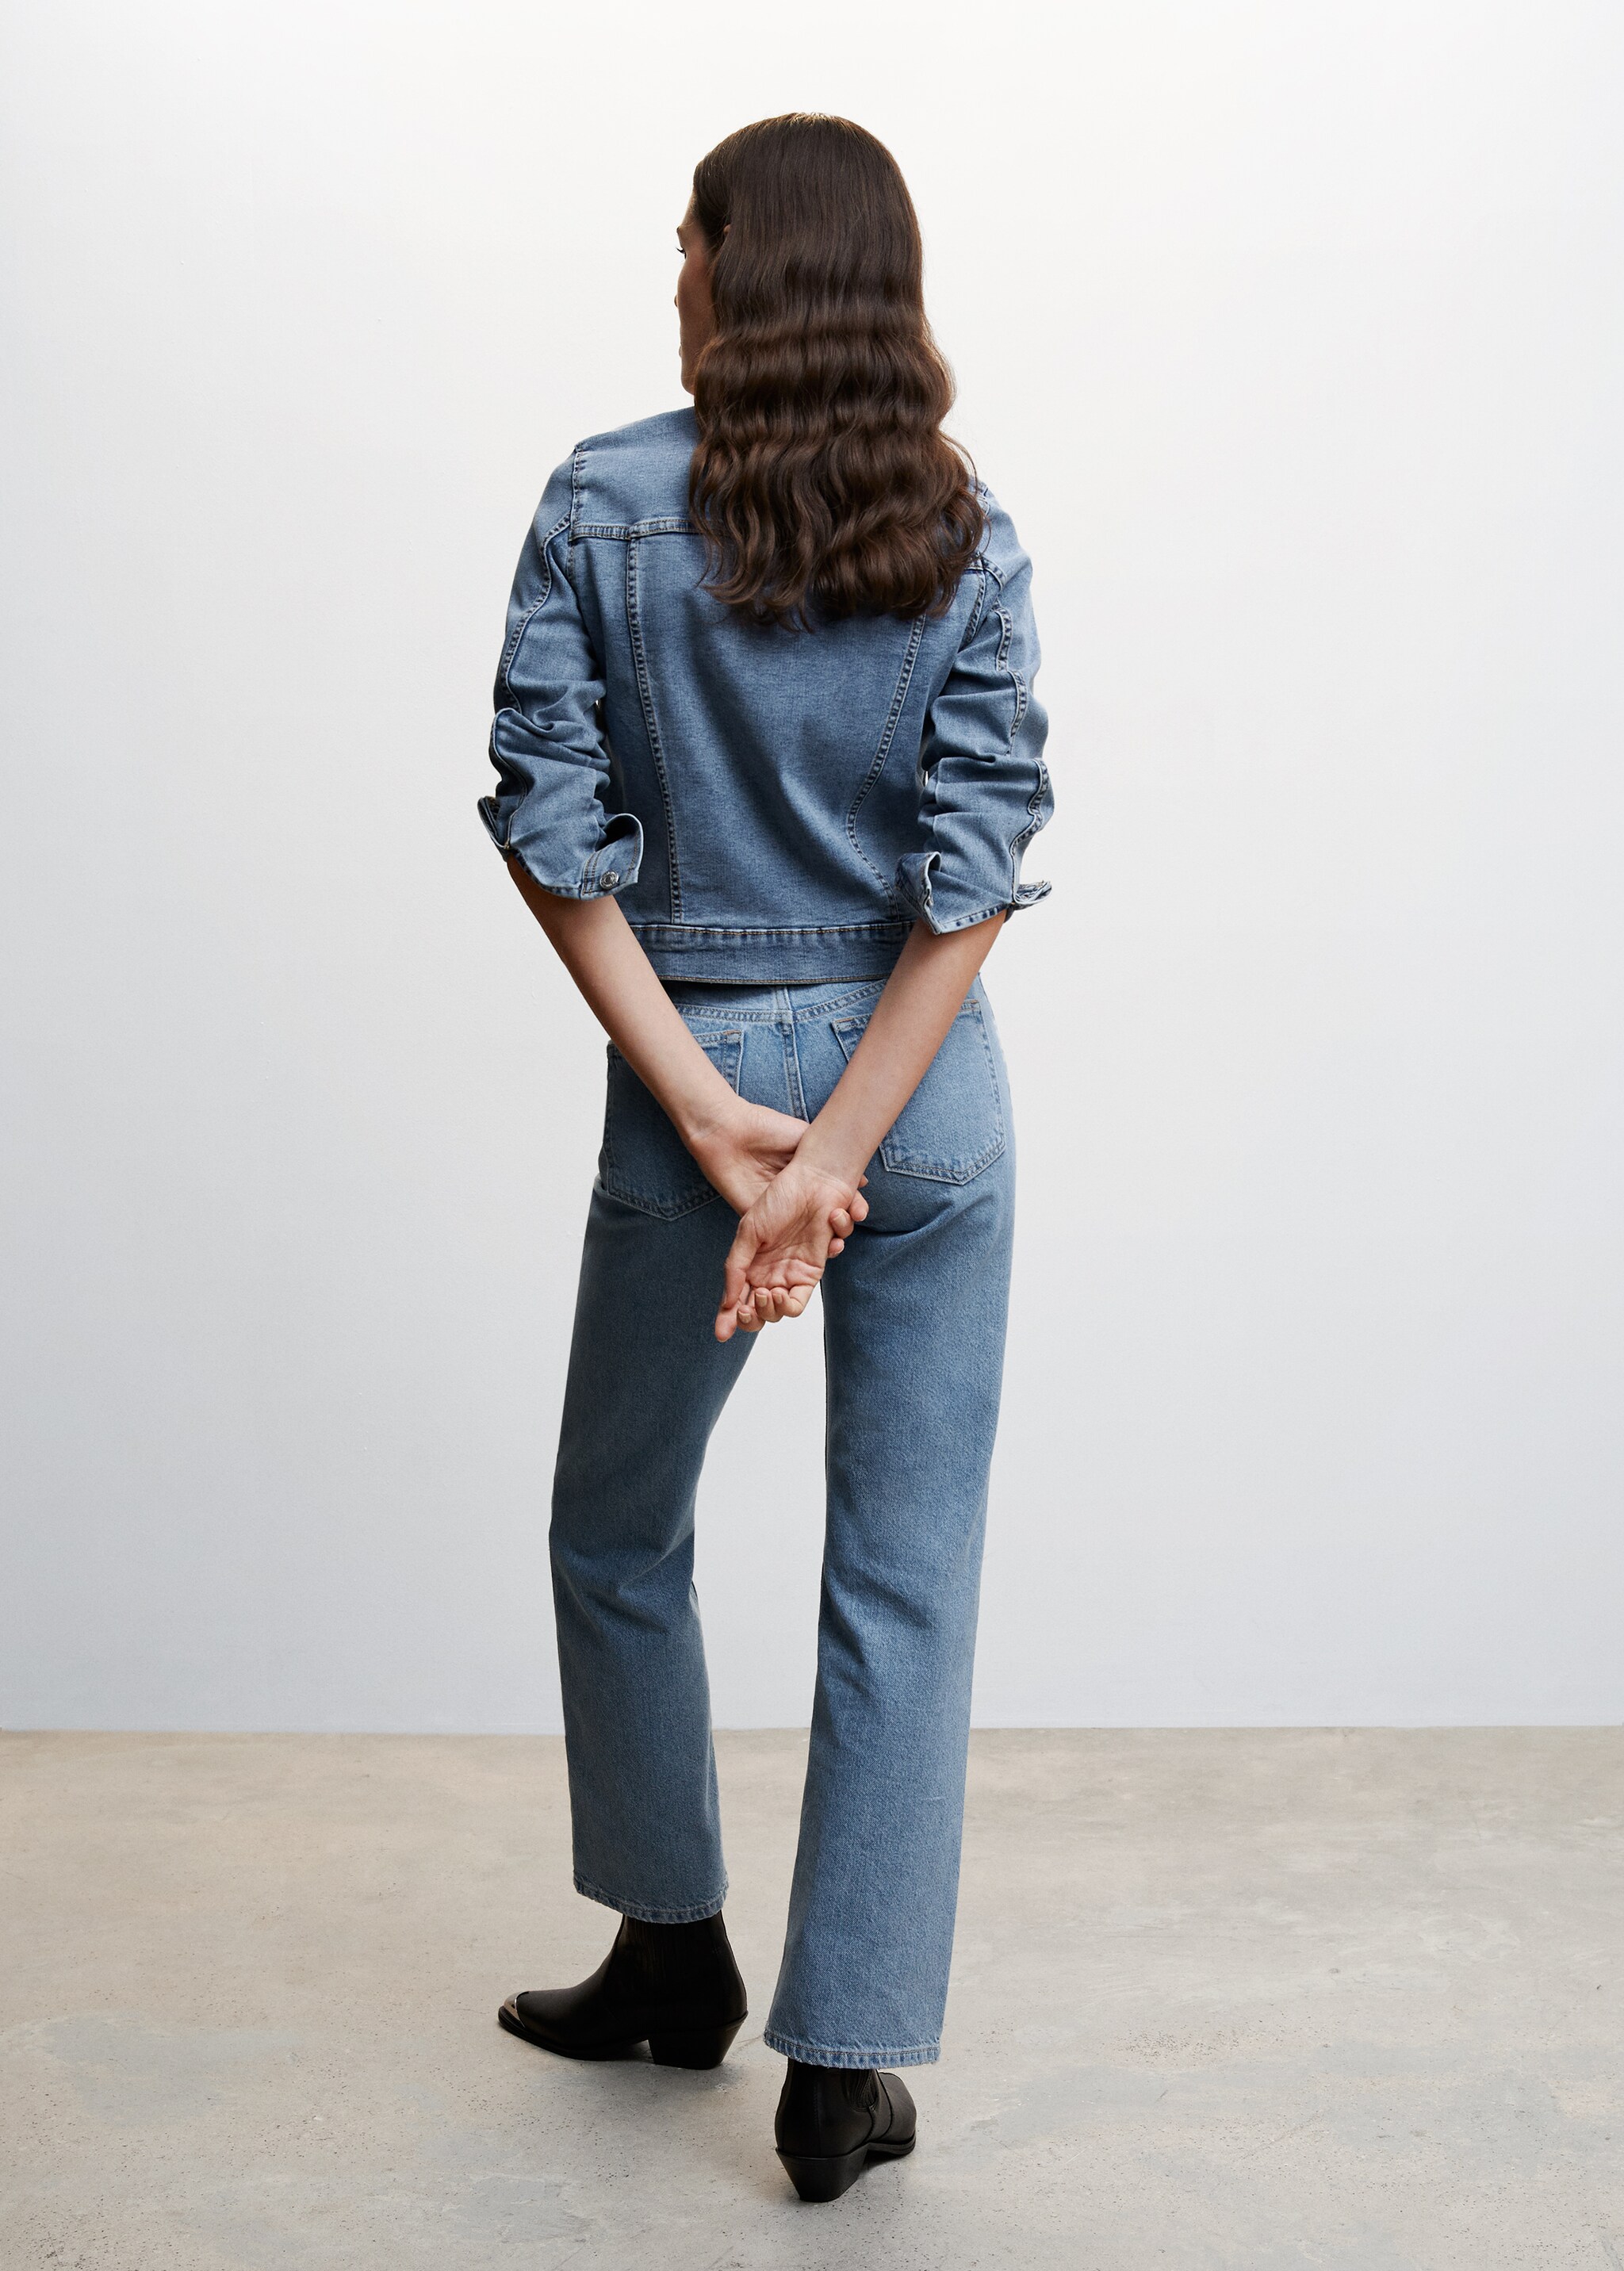 Jeansjacke mit Taschen - Rückseite des Artikels